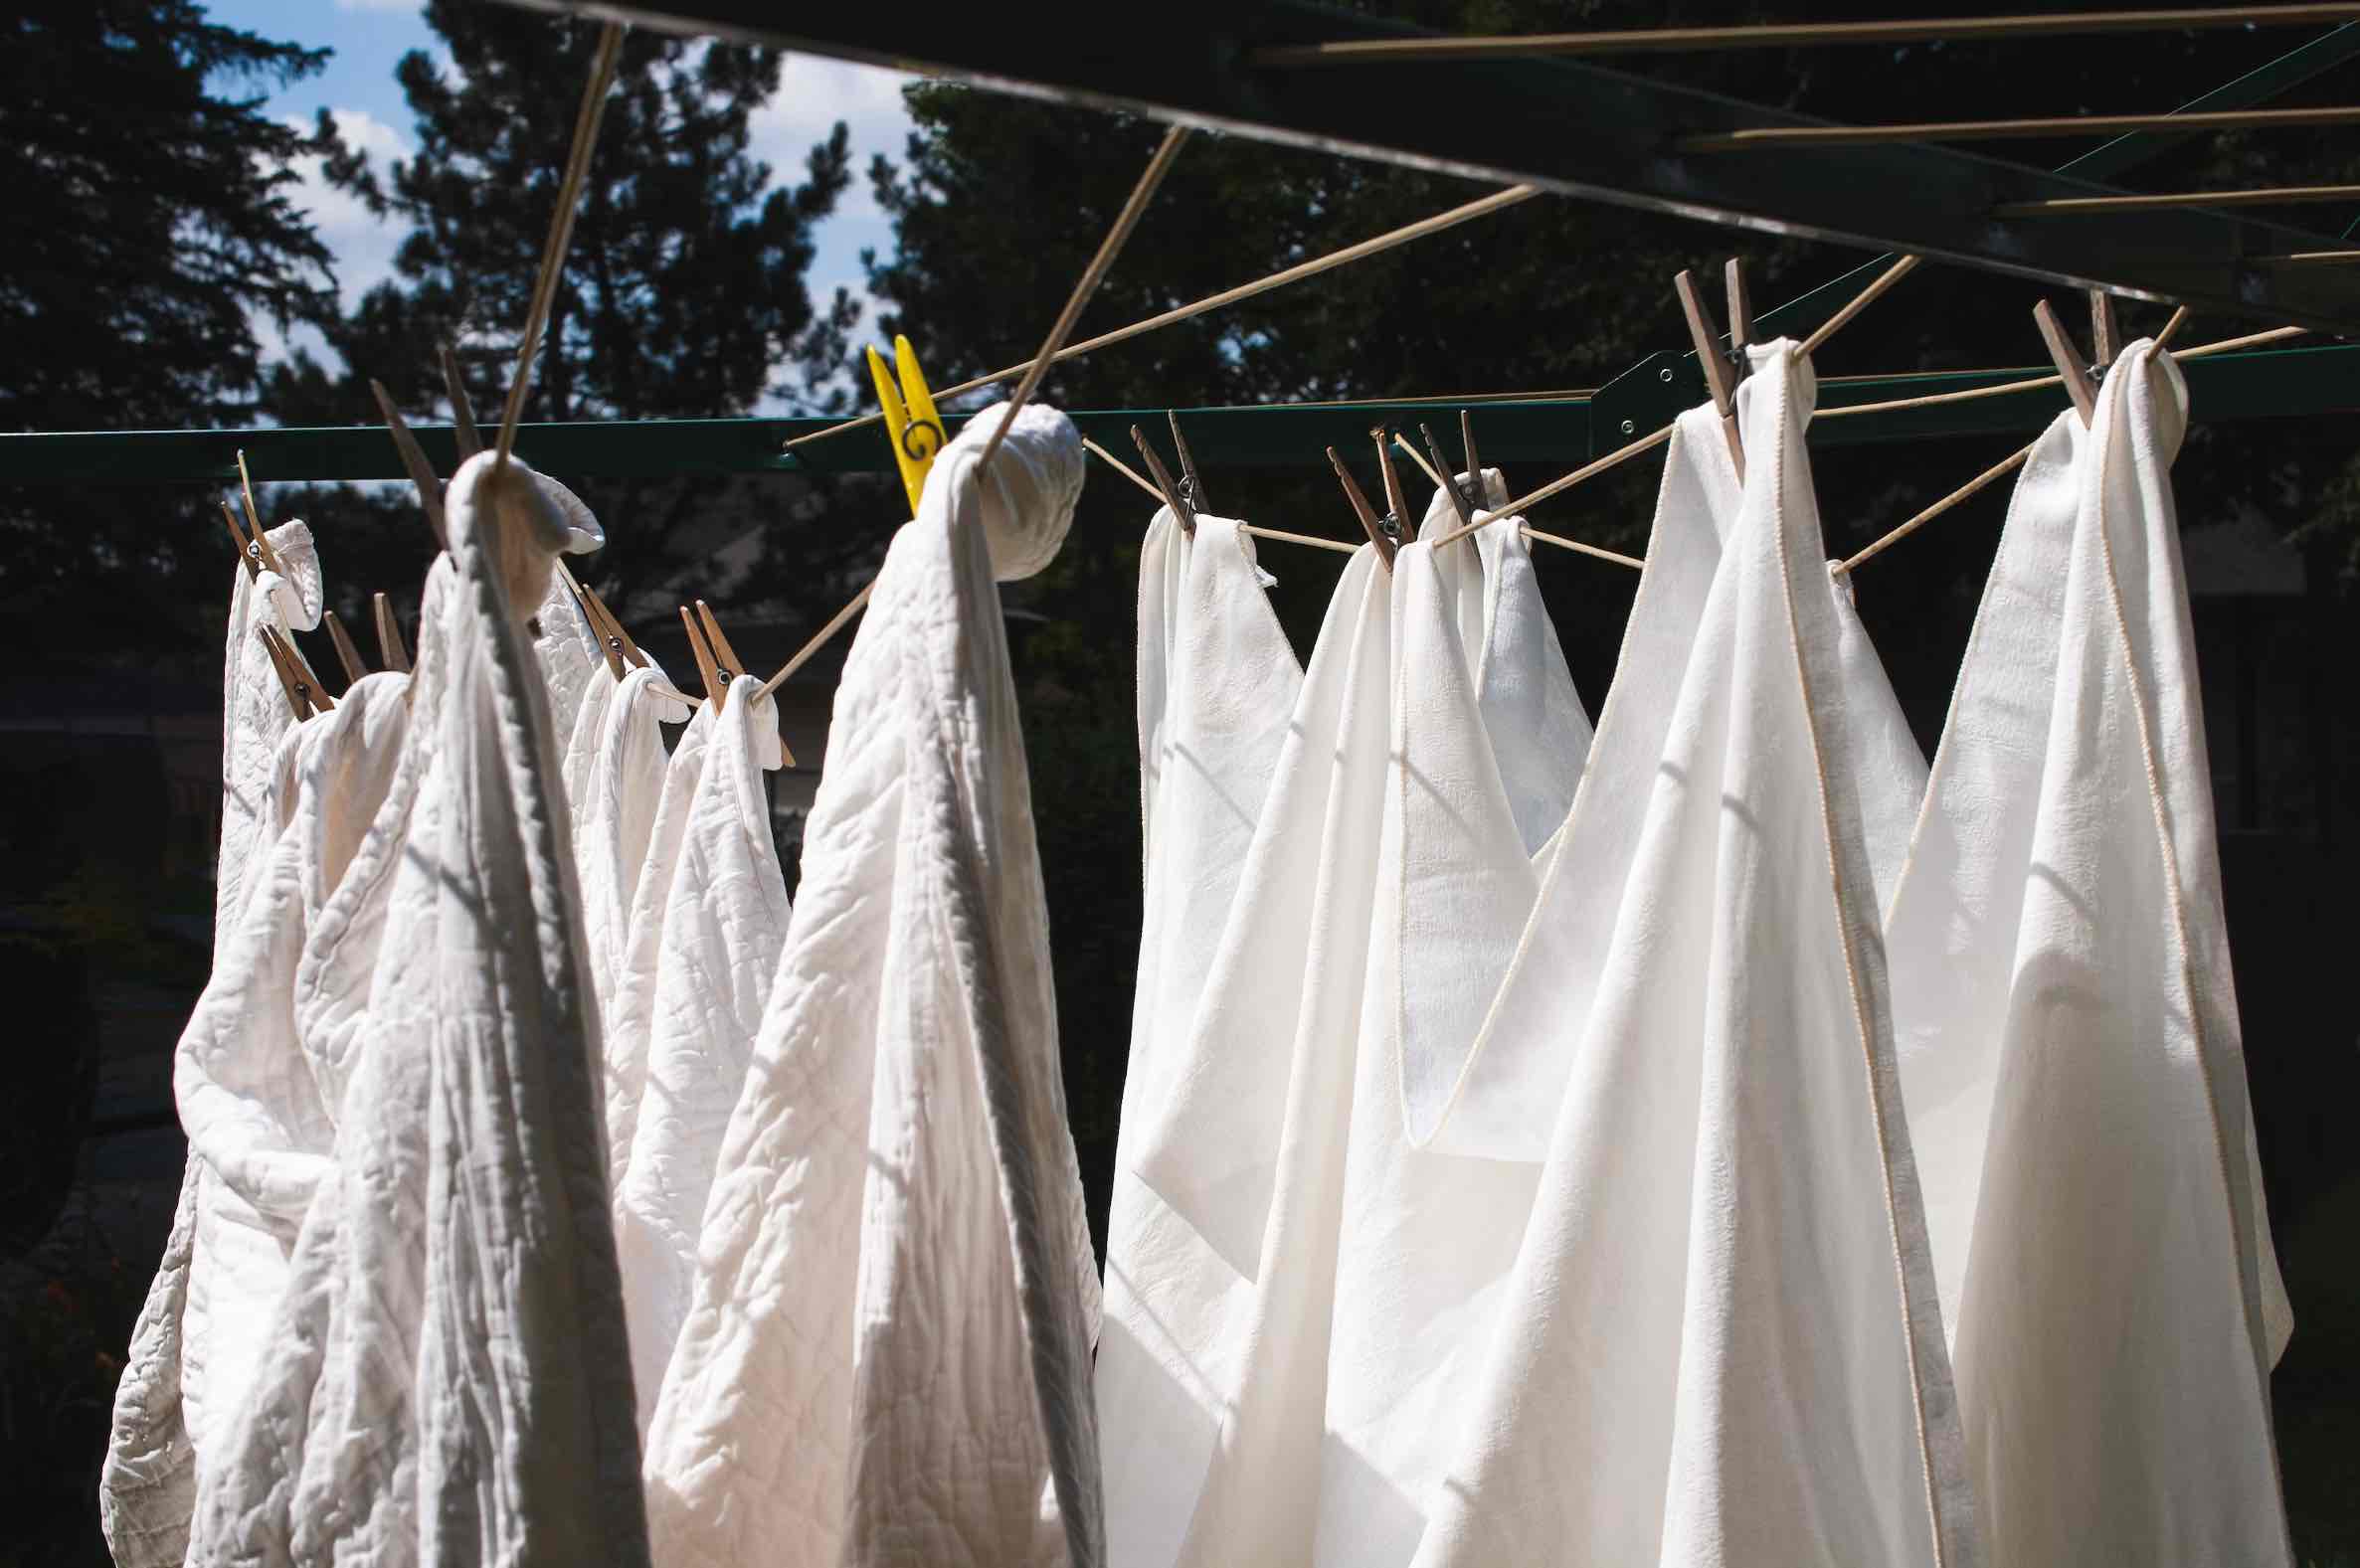 outdoor drying rack